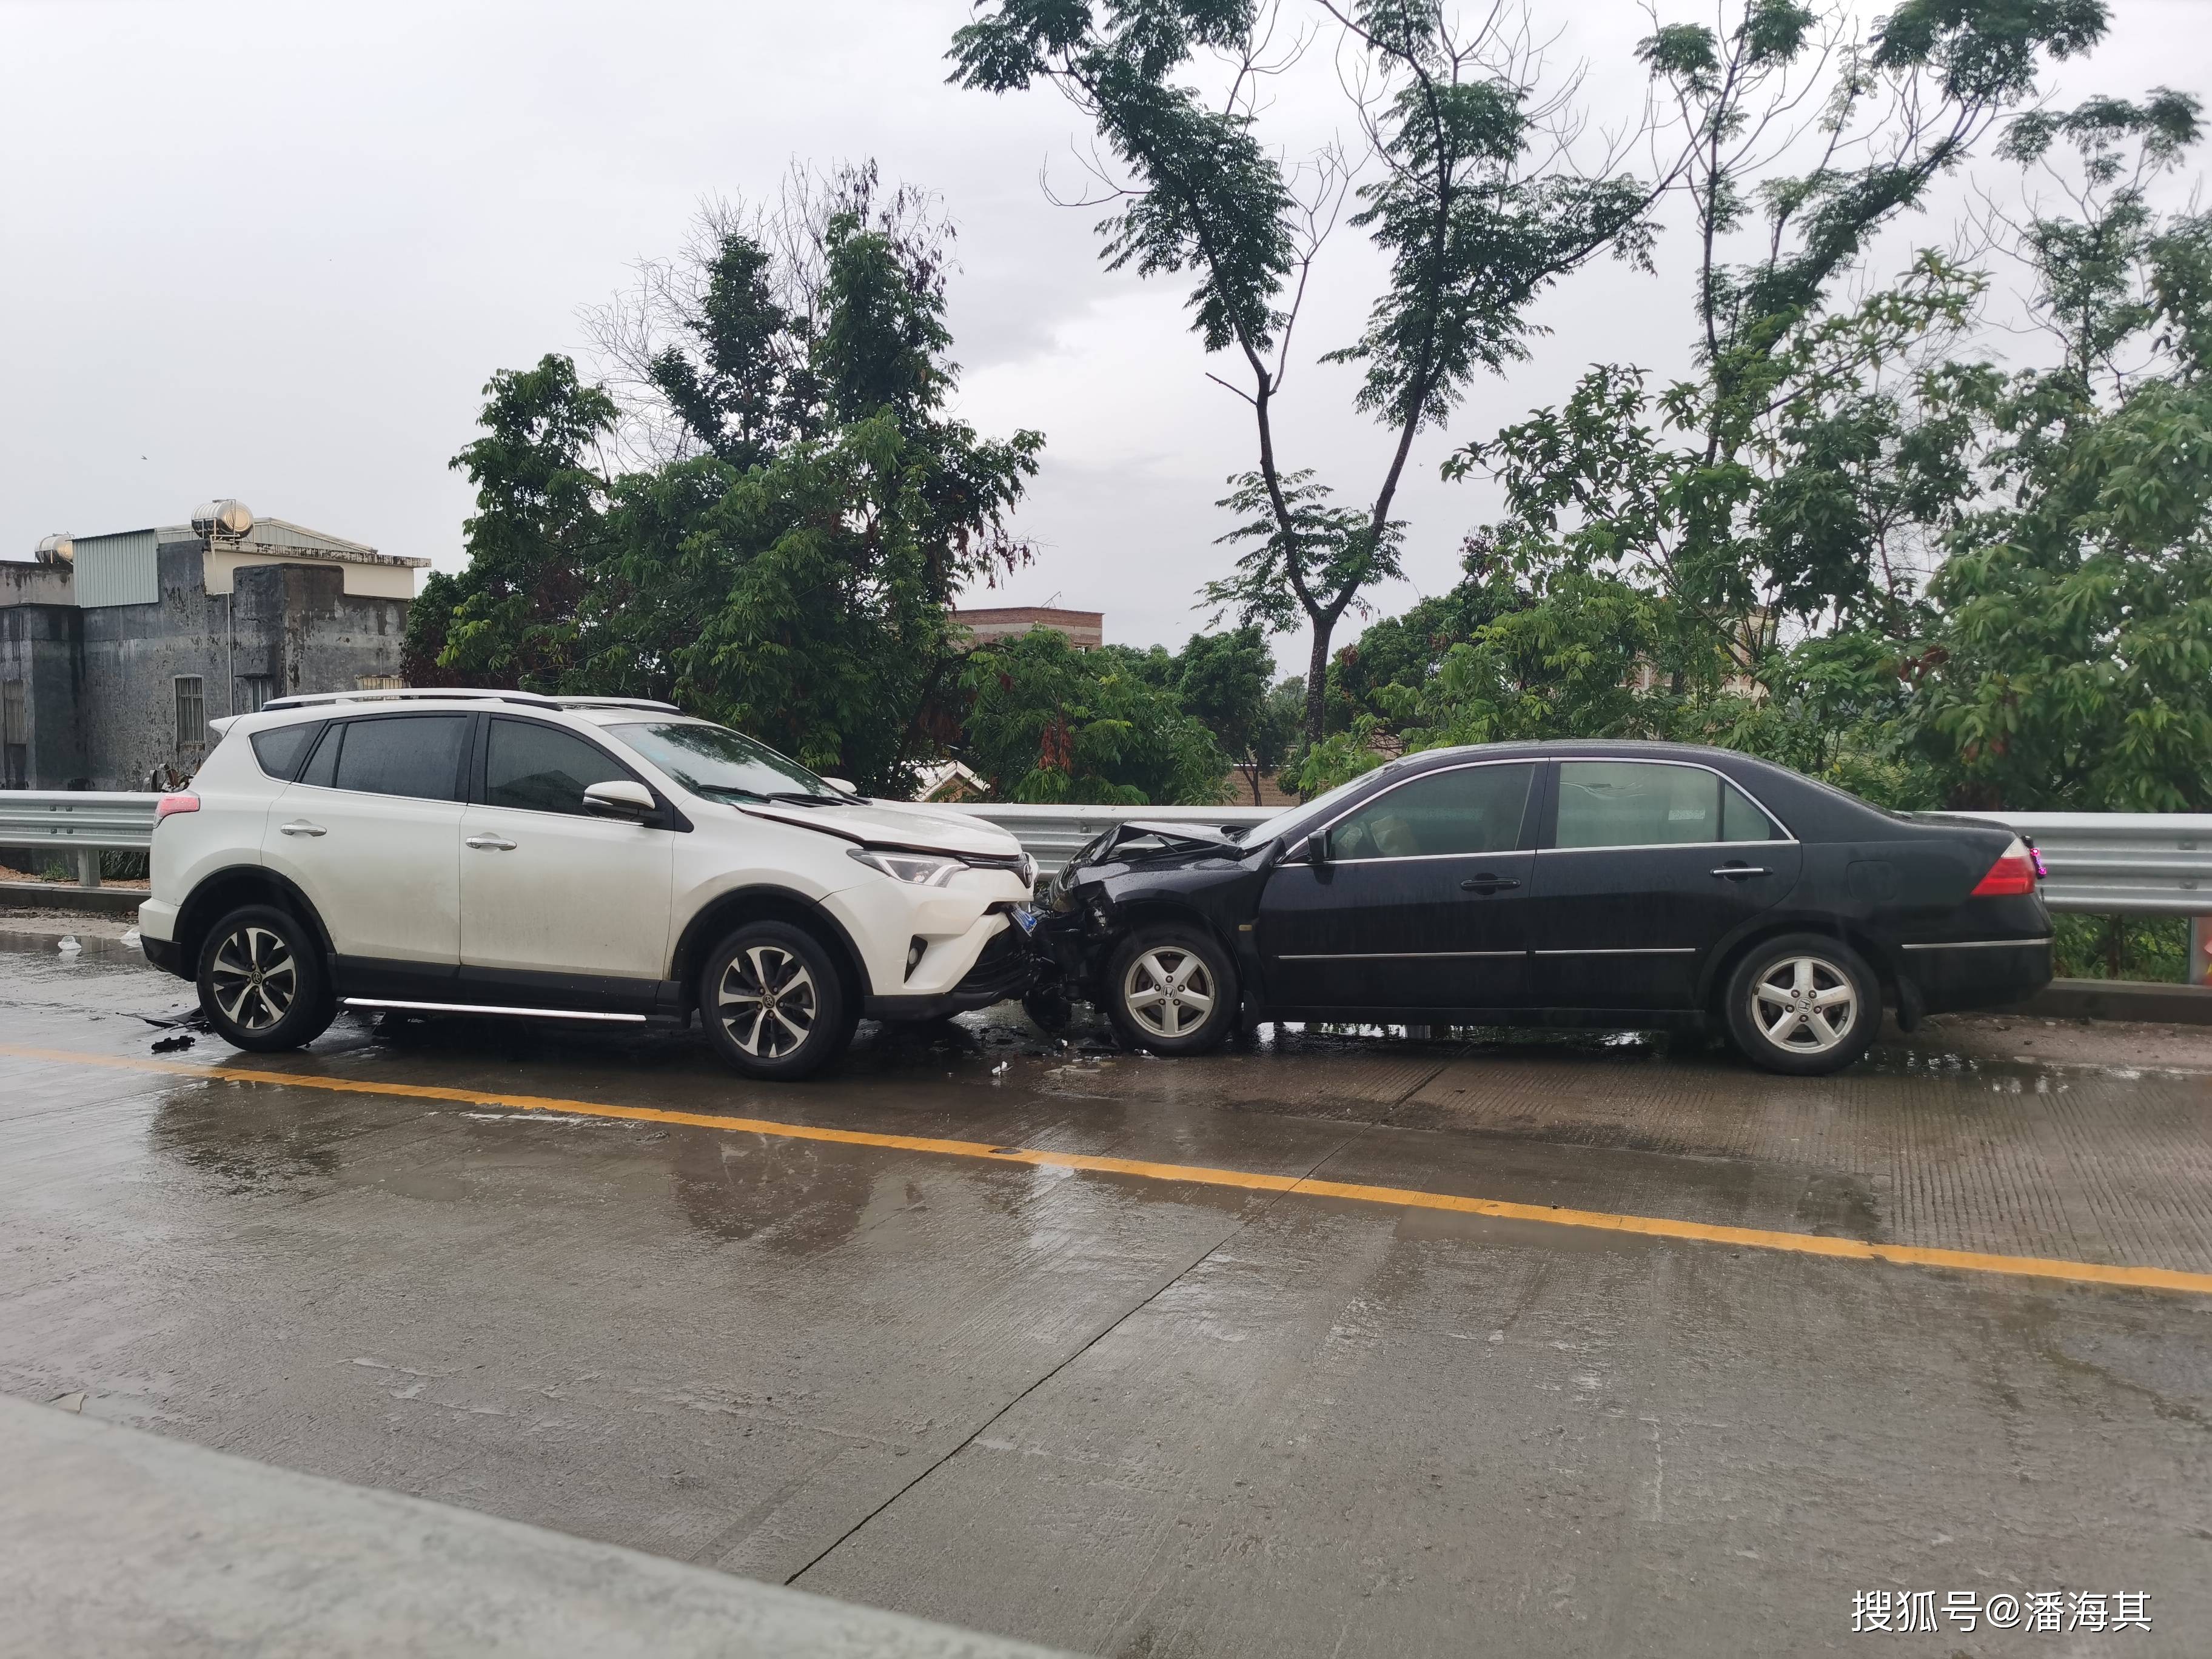 g228国道遂溪县西埇路段发生两车相撞交通事故